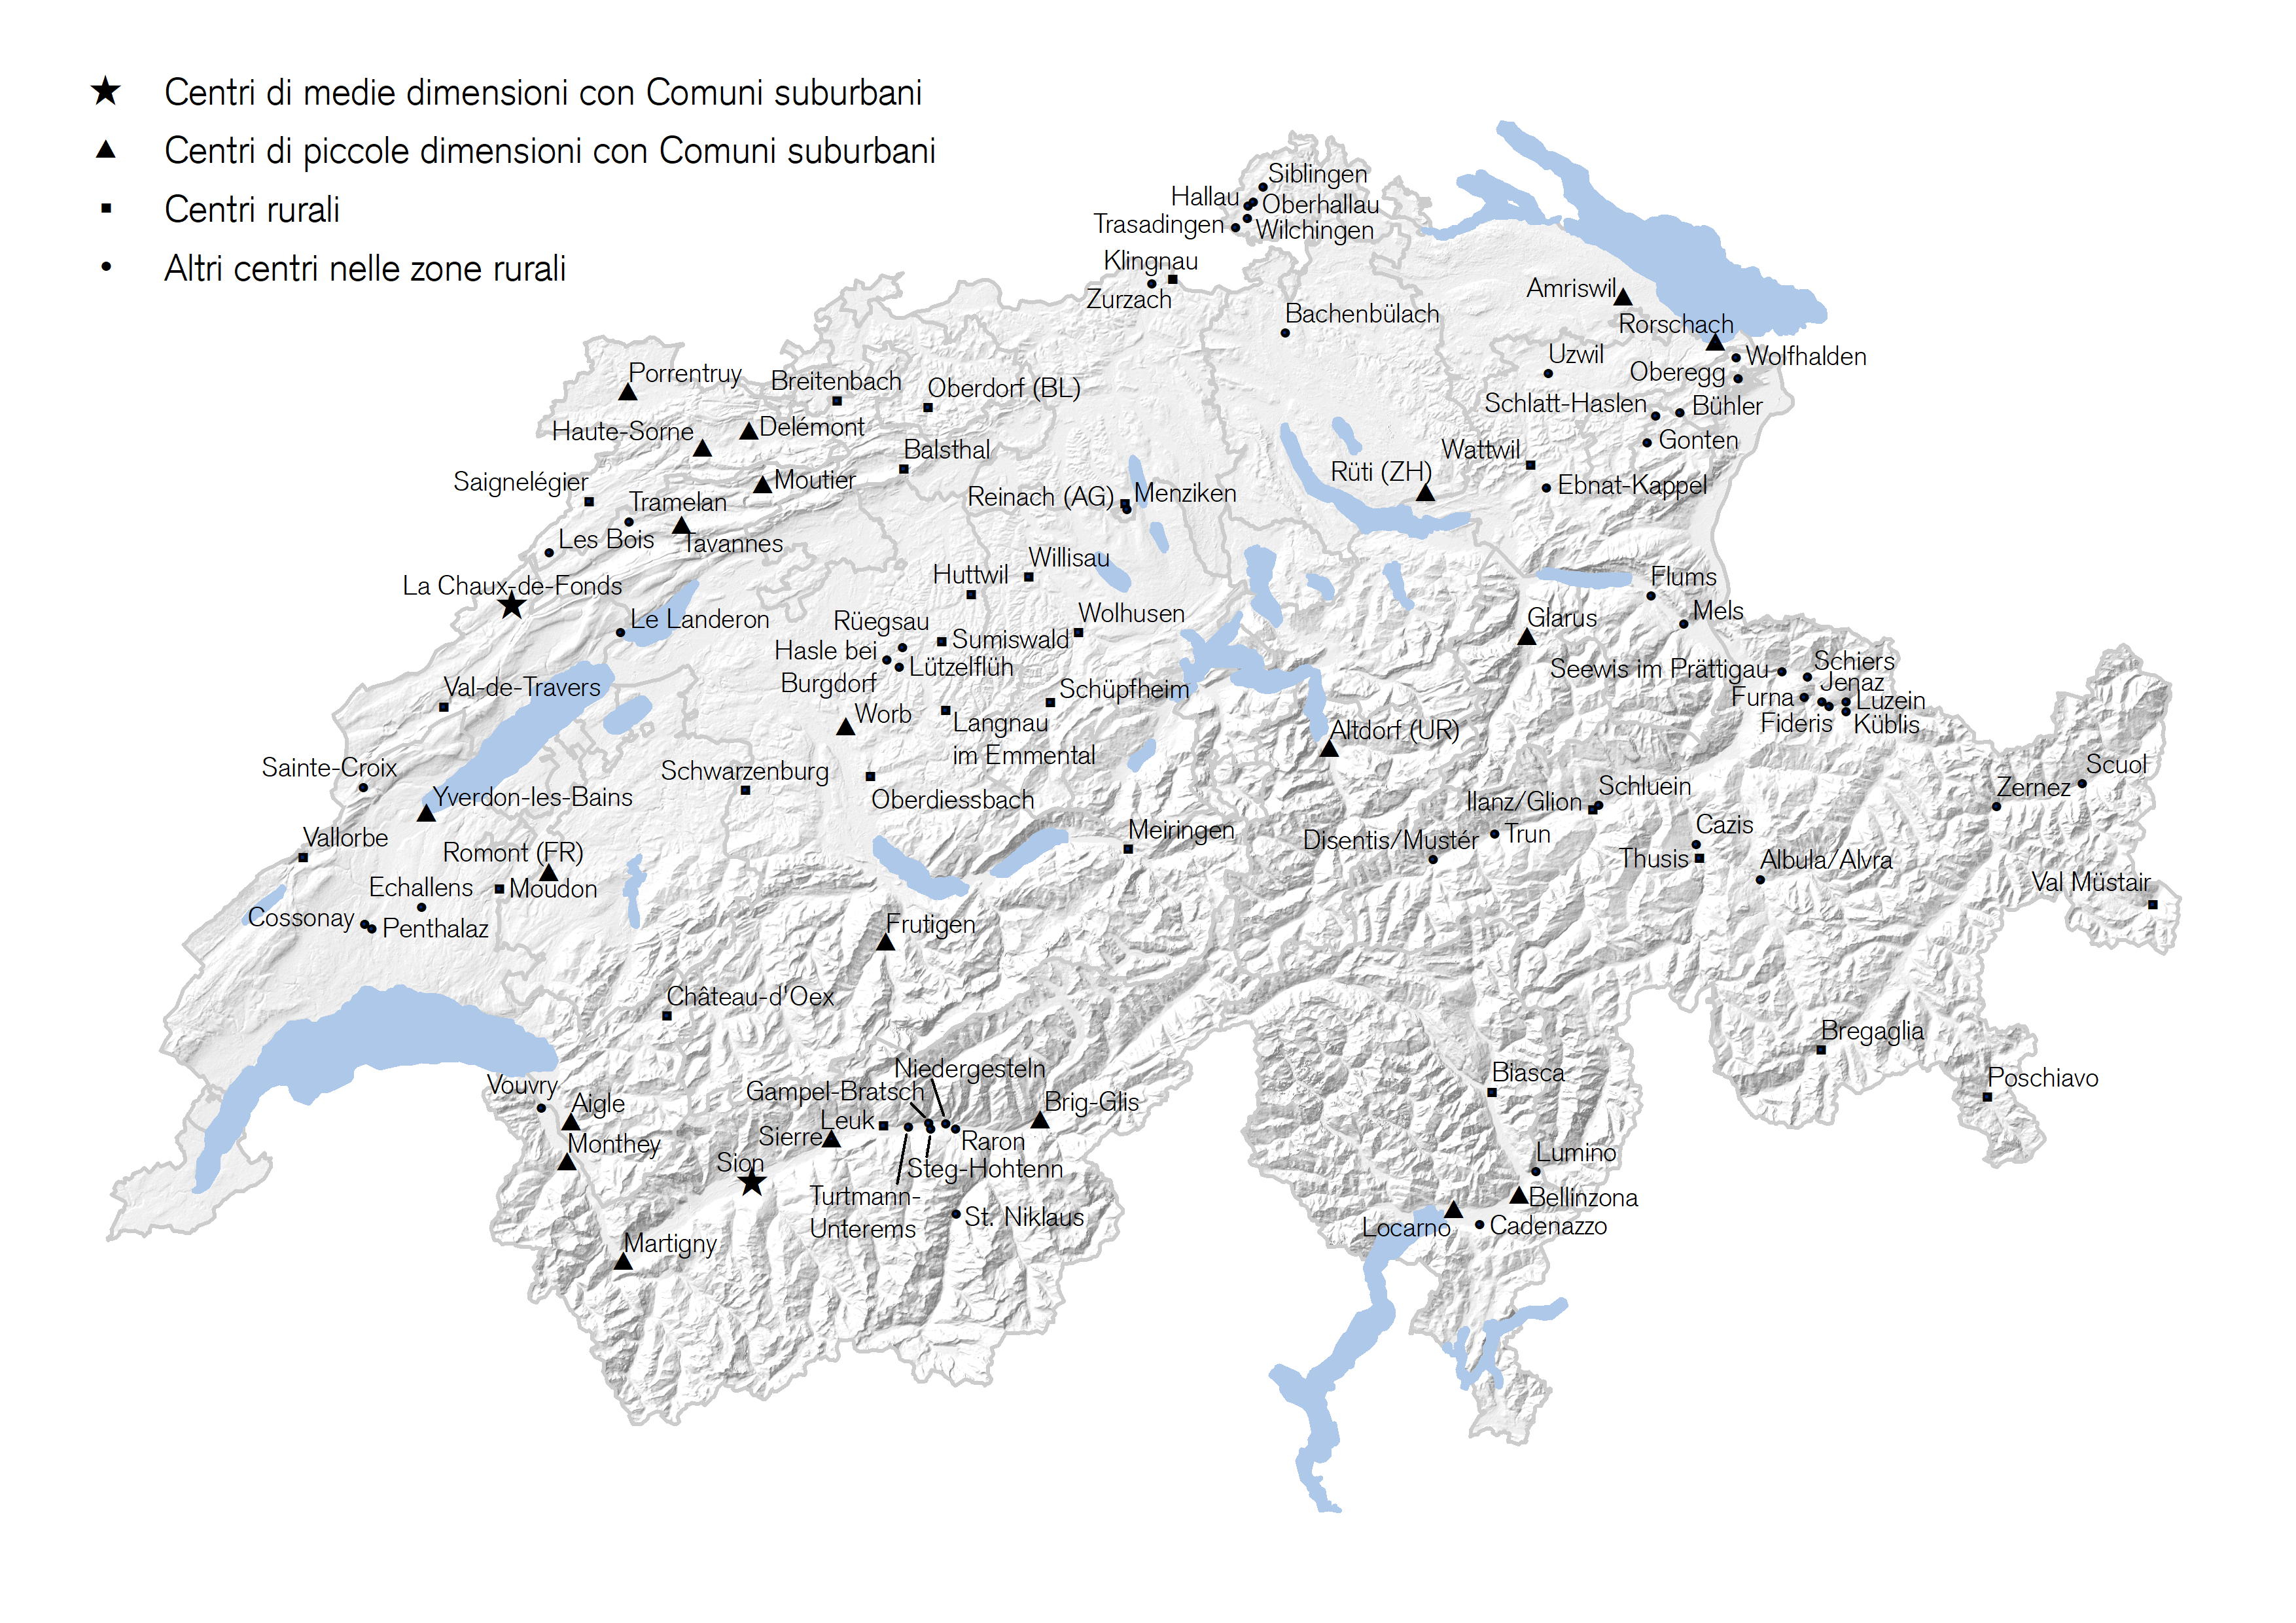 Schema: mappa della Svizzera con indicazione dei Comuni che beneficiano di agevolazioni fiscali da parte della Confederazione.